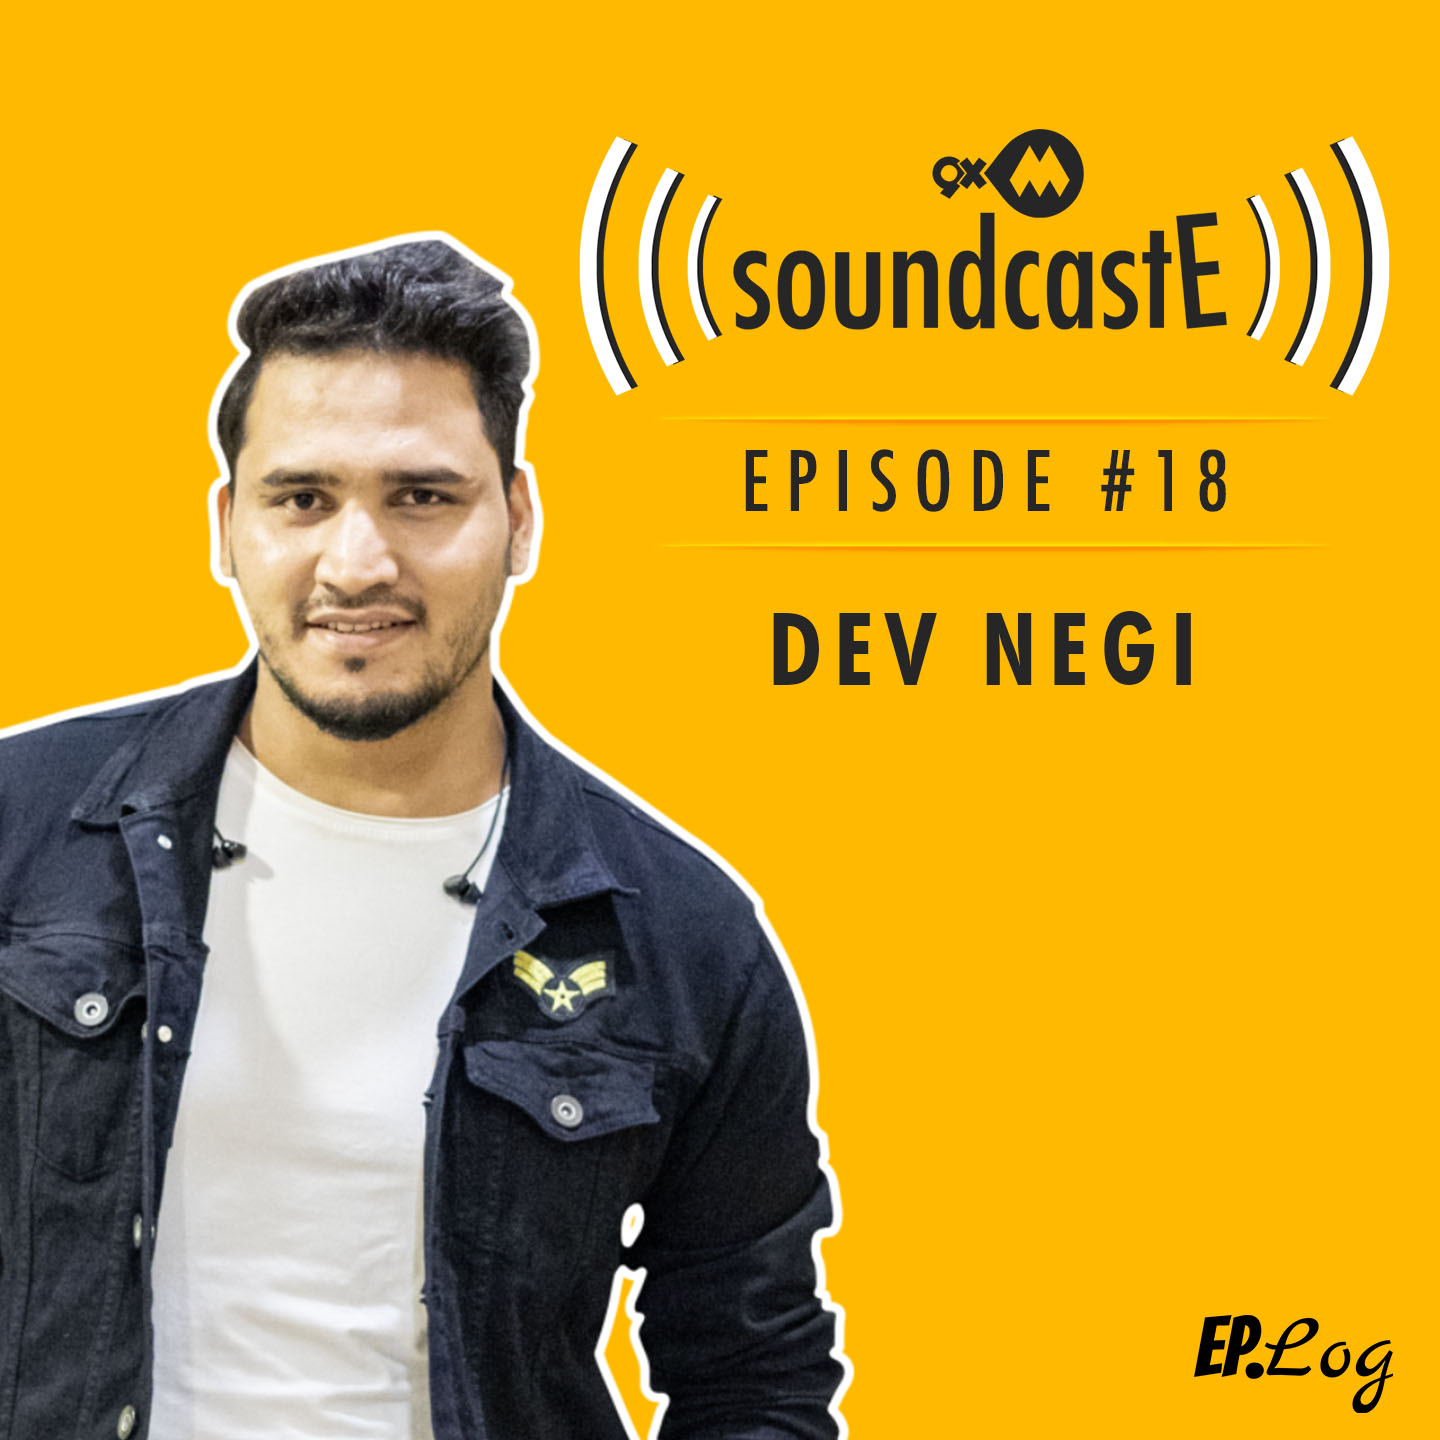 Ep. 18: 9XM SoundcastE Dev Negi